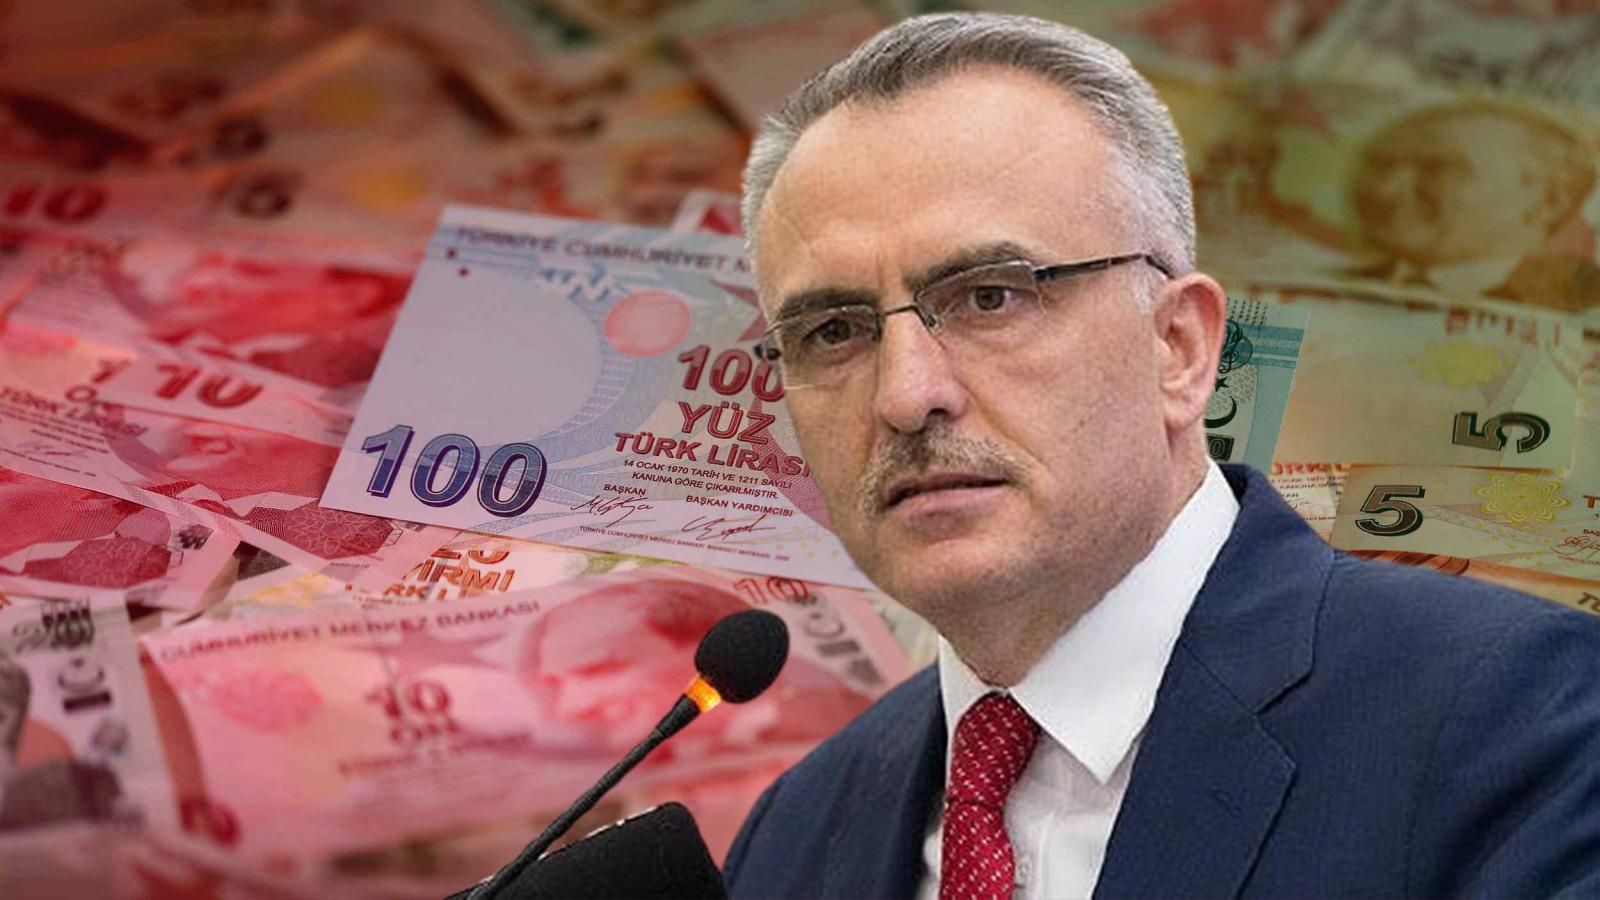 Турецкая лира обвалилась после увольнения главы центробанка